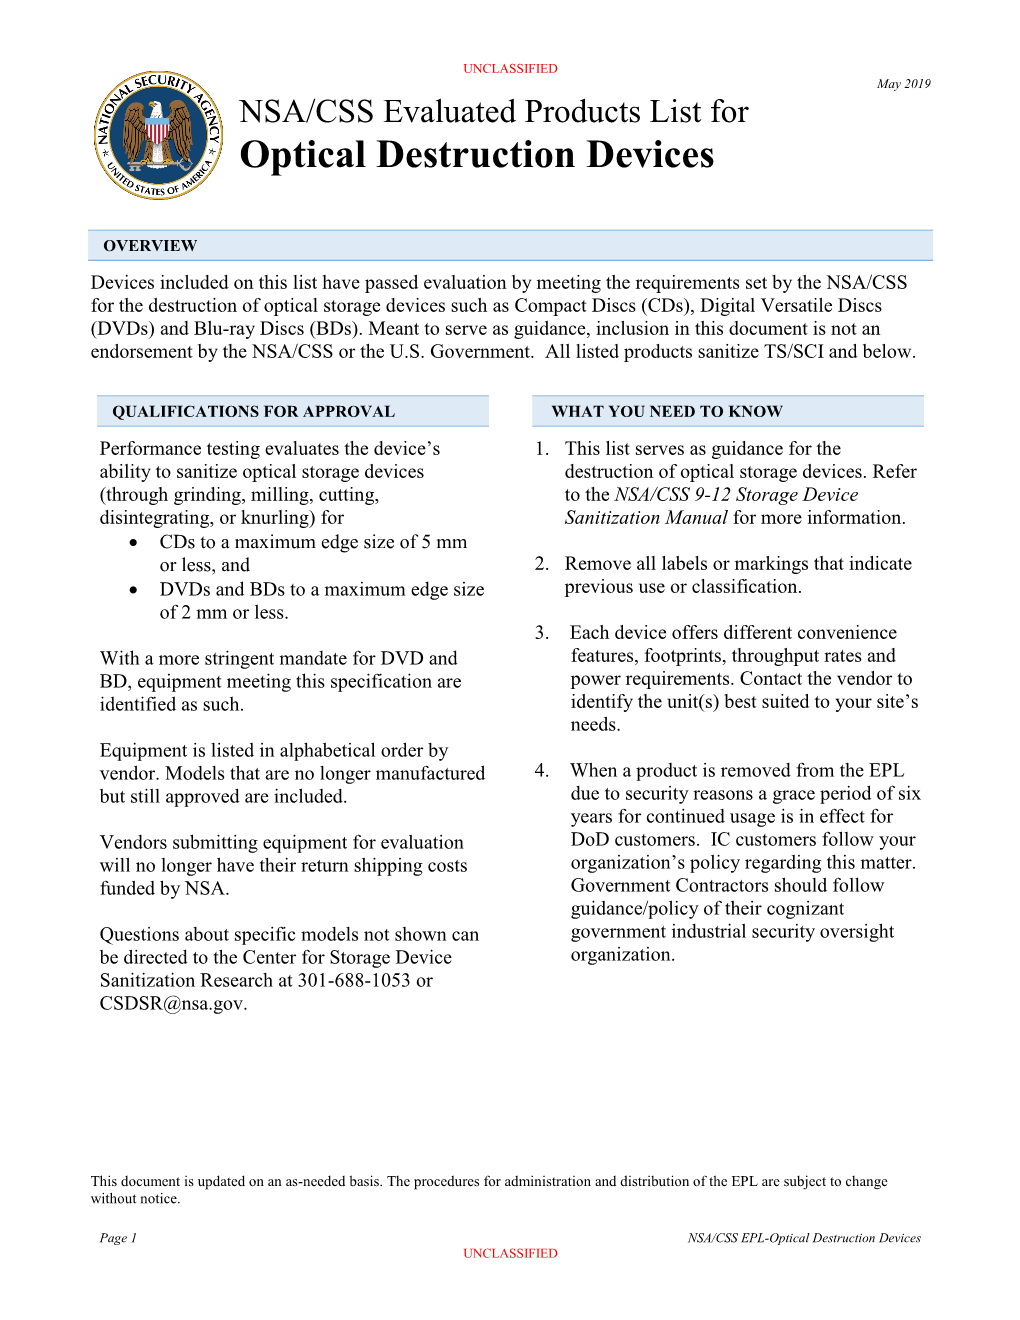 Optical Destruction Devices